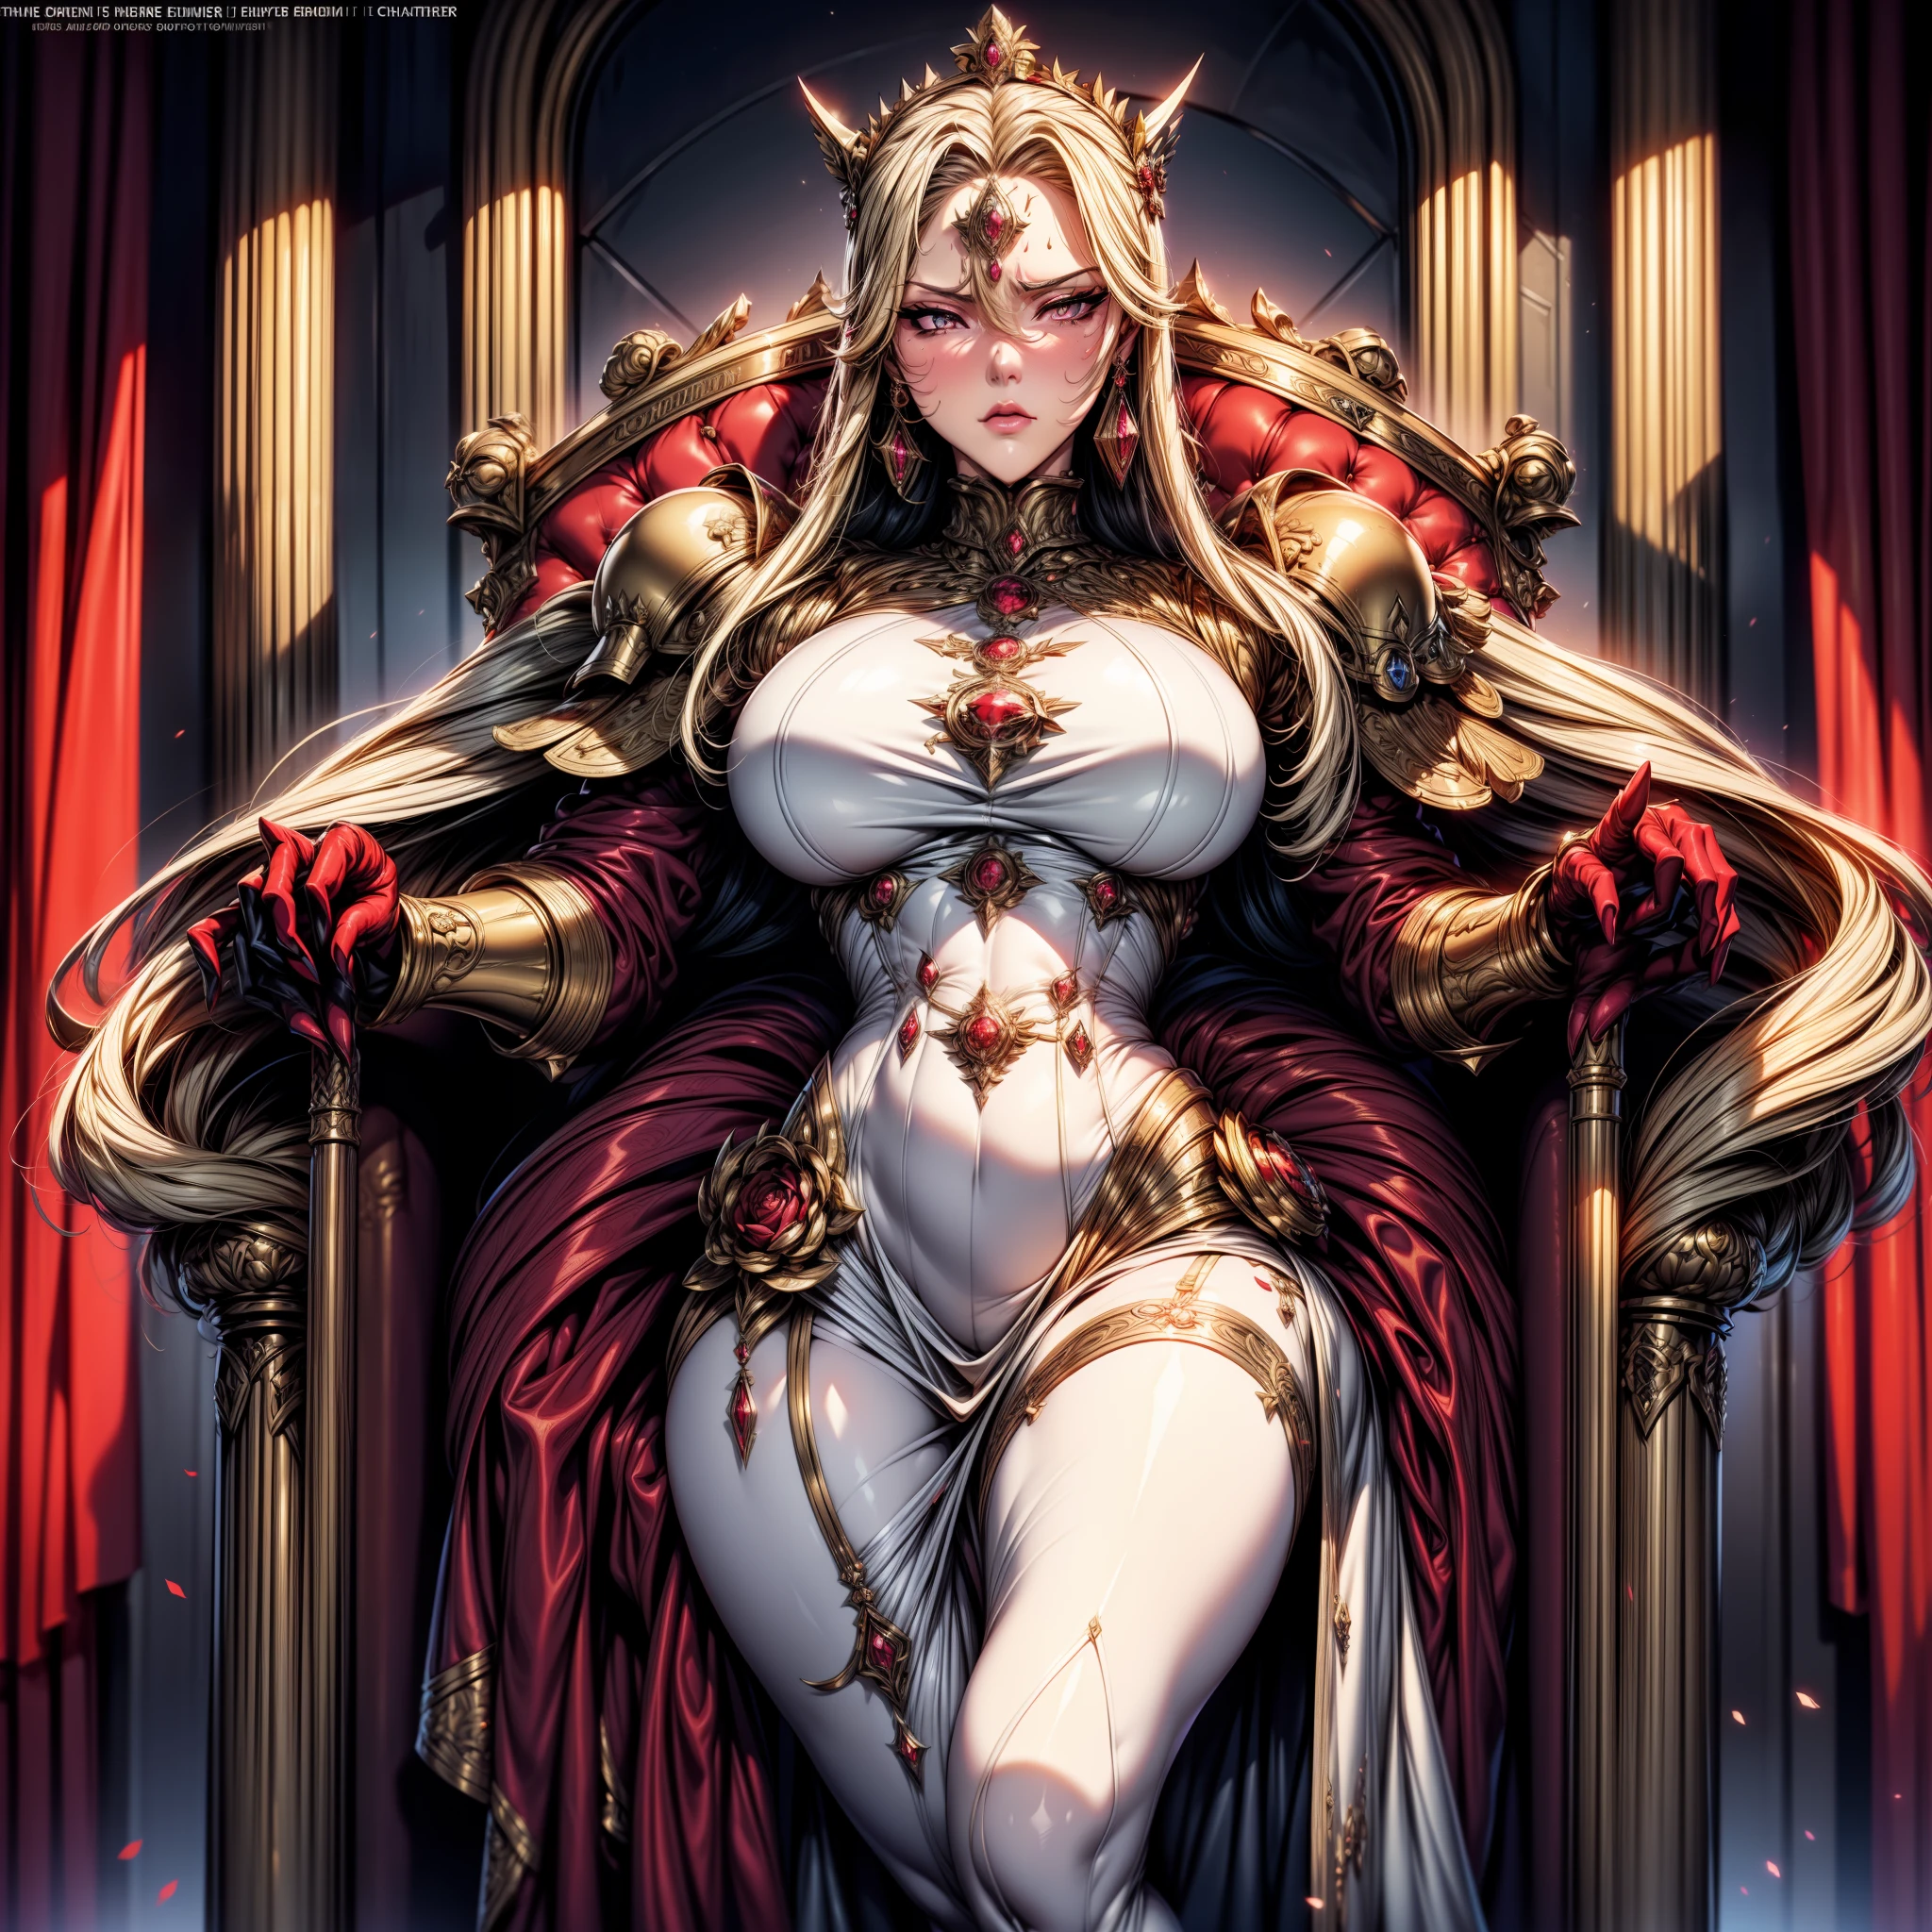 电影海报图片展示了《战锤 40K》的色彩（（（（戏剧））），（（（坚毅））），（（（愤怒）））（杂志：1.3），（封面样式：1.3）这是《战锤40k》皇帝的女儿电影海报。在屏幕上，一位身着华丽宫廷礼服的高贵端庄的女性，头上的皇冠，就像战锤40K里的皇室血统象征。她有一头金色的长发，眼睛里流露出自信和主导地位。女人手握权杖，闪耀着天使的光芒，象征着她作为皇帝女儿的权威和权力。她身后是一座宏伟的宫殿，充满奢华与庄严。整个画面散发着神圣、威严的气息，展现了战锤 40K 皇帝女儿的统治和王者风范。